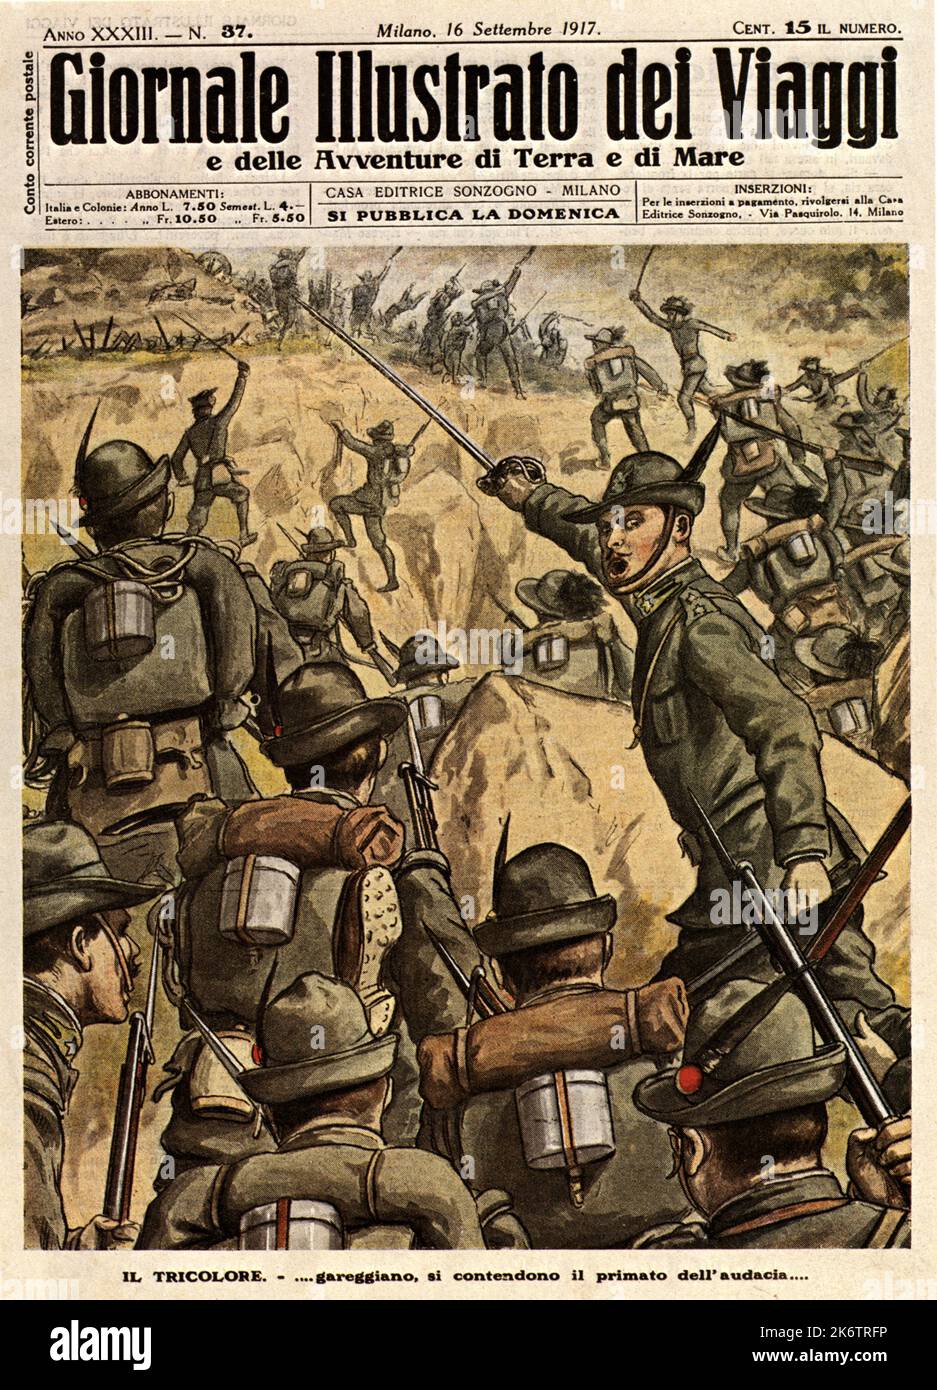 1917 , ITALY : The italian military ALPINI troups  at war during WWI . Cover of italian magazine GIORNALE ILLUSTRATO DEI VIAGGI , 16 september 1917 . Artwork by unknown artist . - ALPINI - ALPINE - ALPINO - PRIMA  GUERRA MONDIALE - First World War - Great War - WWI - miliari soldati italiani -  HISTORY - FOTO STORICHE - PROPAGANDA - ILLUSTRAZIONE - ILLUSTRATION  - copertina rivista giornale illustrato - battaglia - battle - attacco ---  Archivio GBB Stock Photo